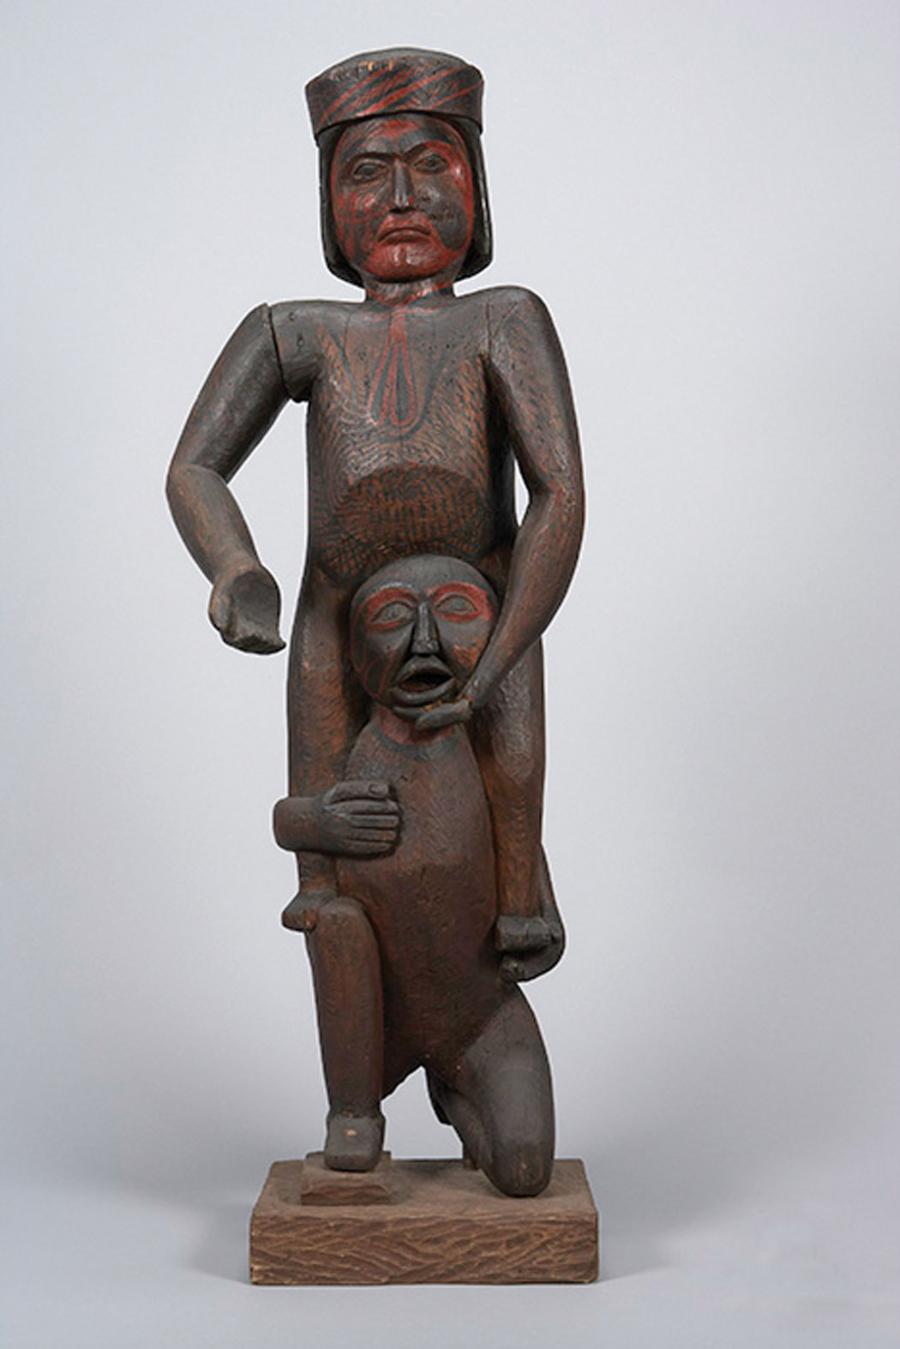 Osoby uprowadzone zwykle funkcjonowały w małych społecznościach jako niewolnicy; ilustruje to figurka wyrzeźbiona przez Indian Północno-Zachodniego Wybrzeża.